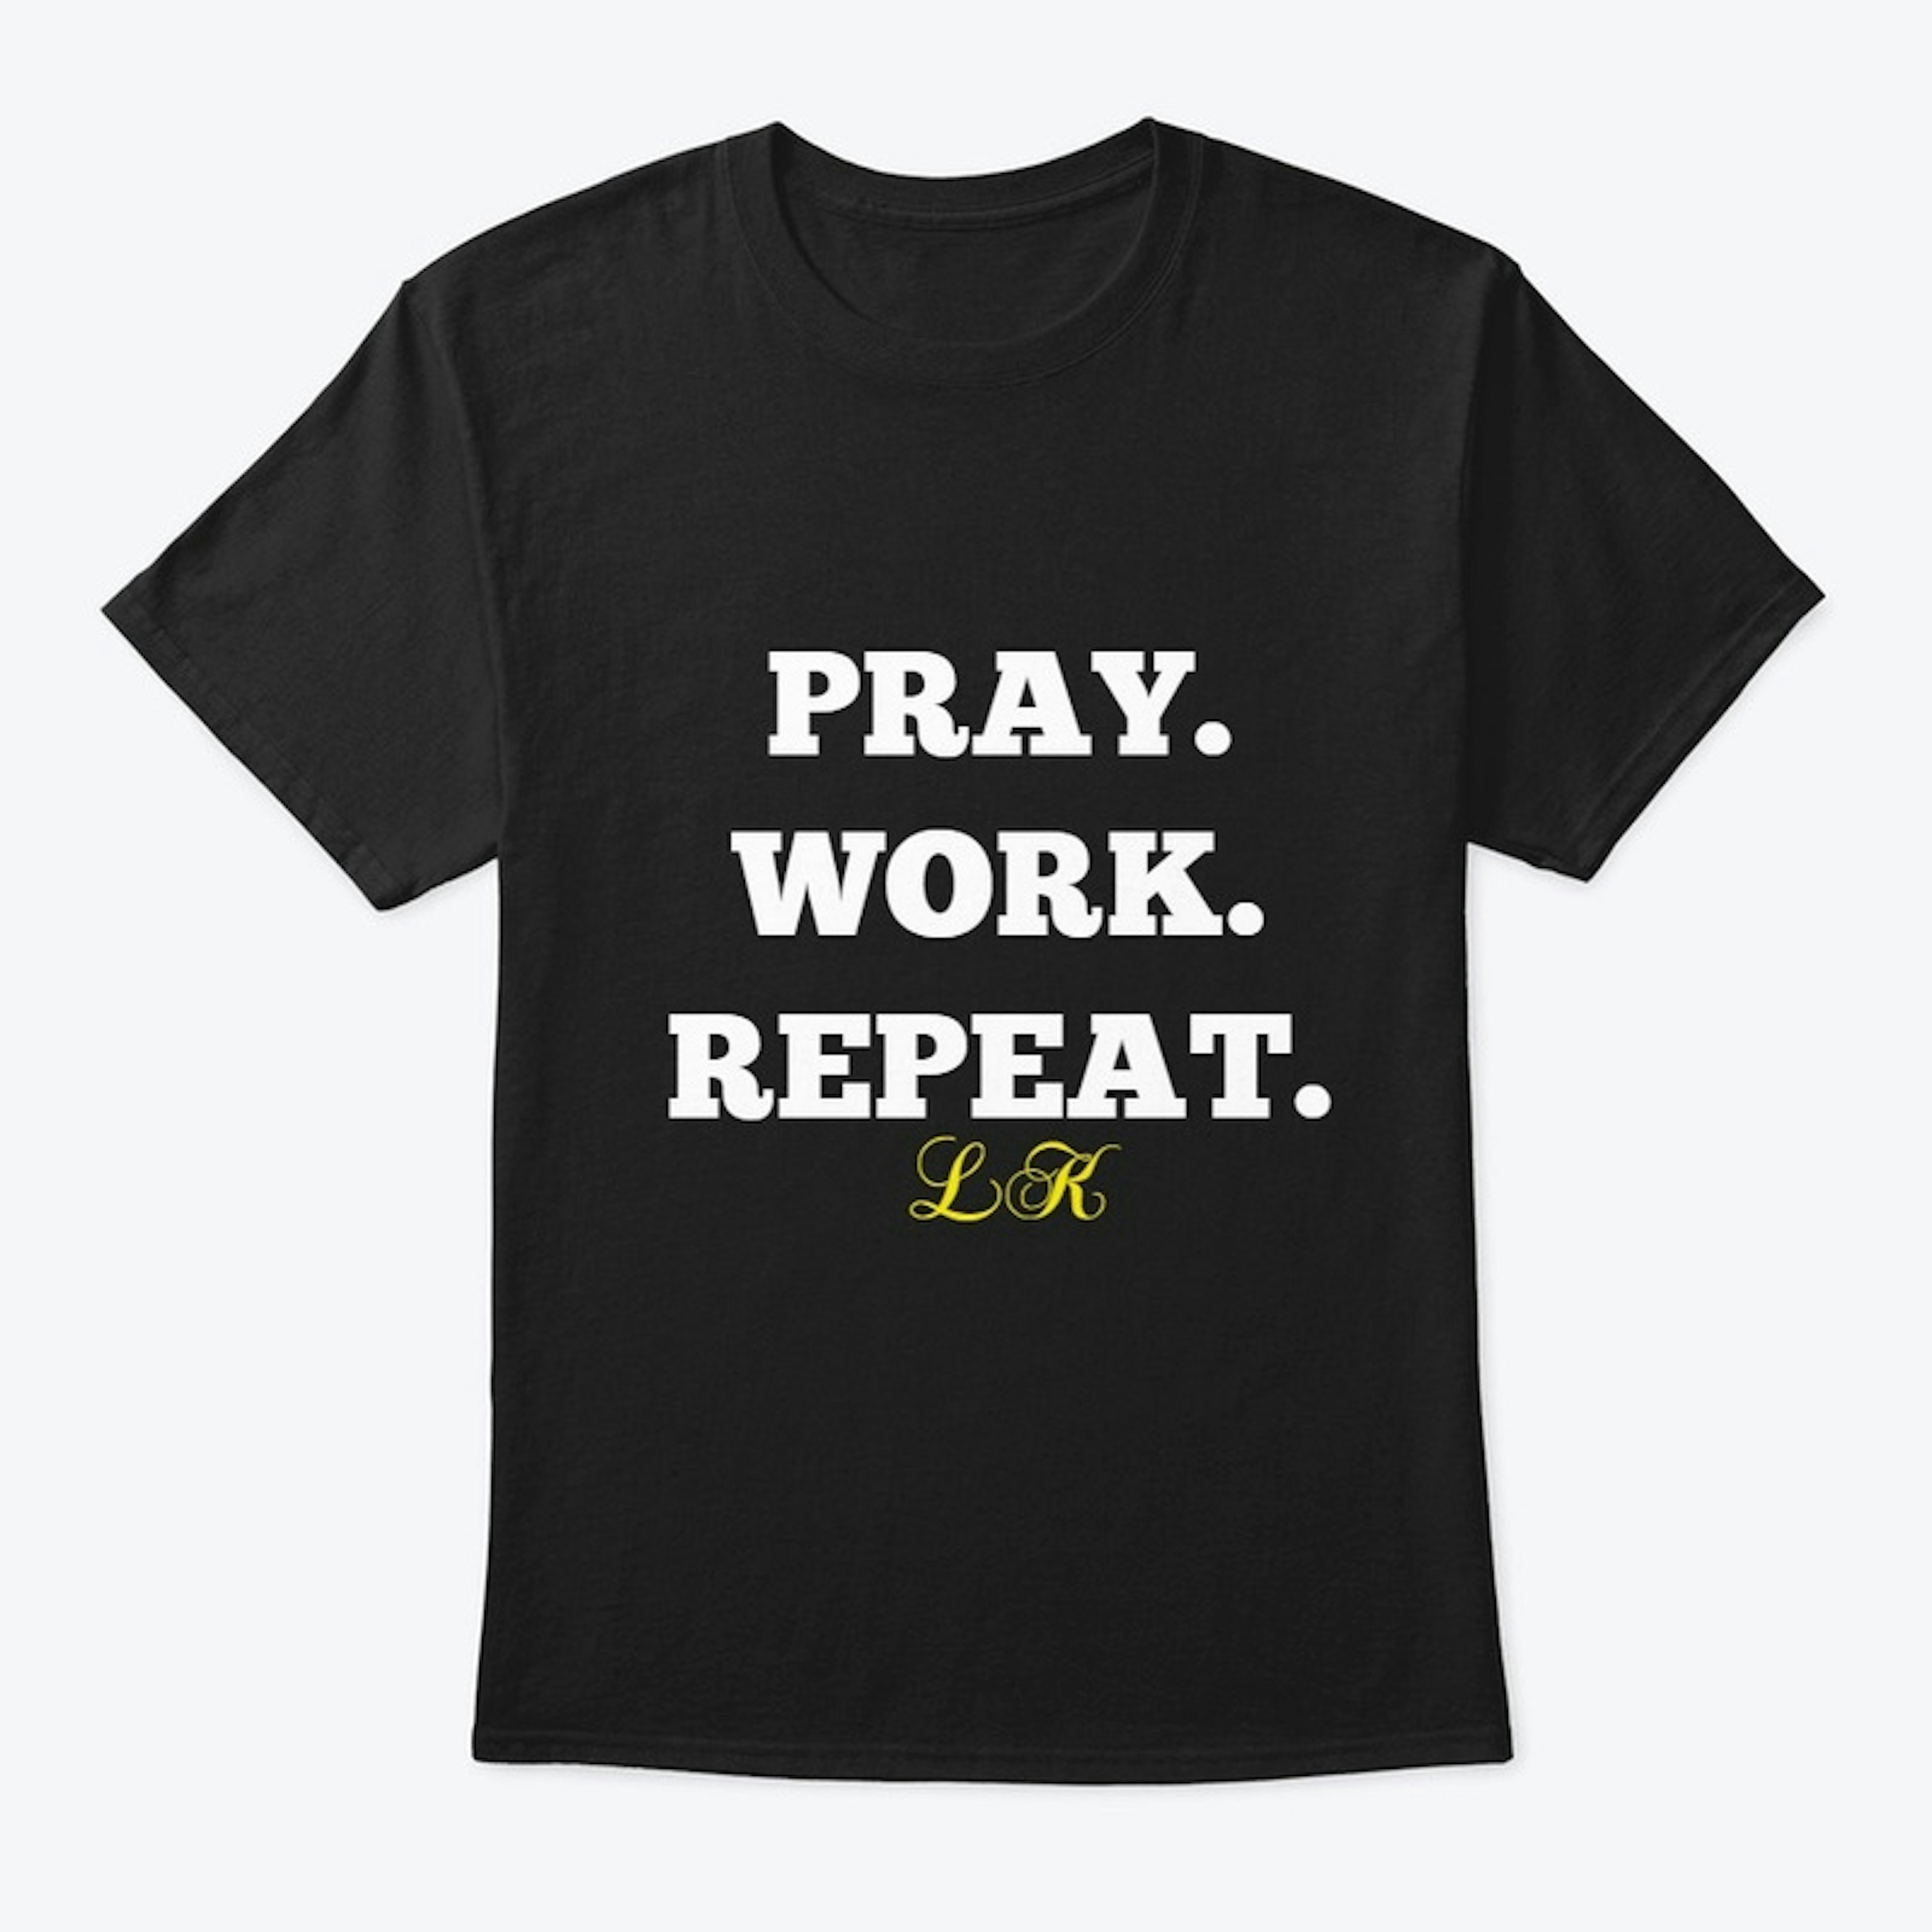 PRAY. WORK. REPEAT. Tee by LK